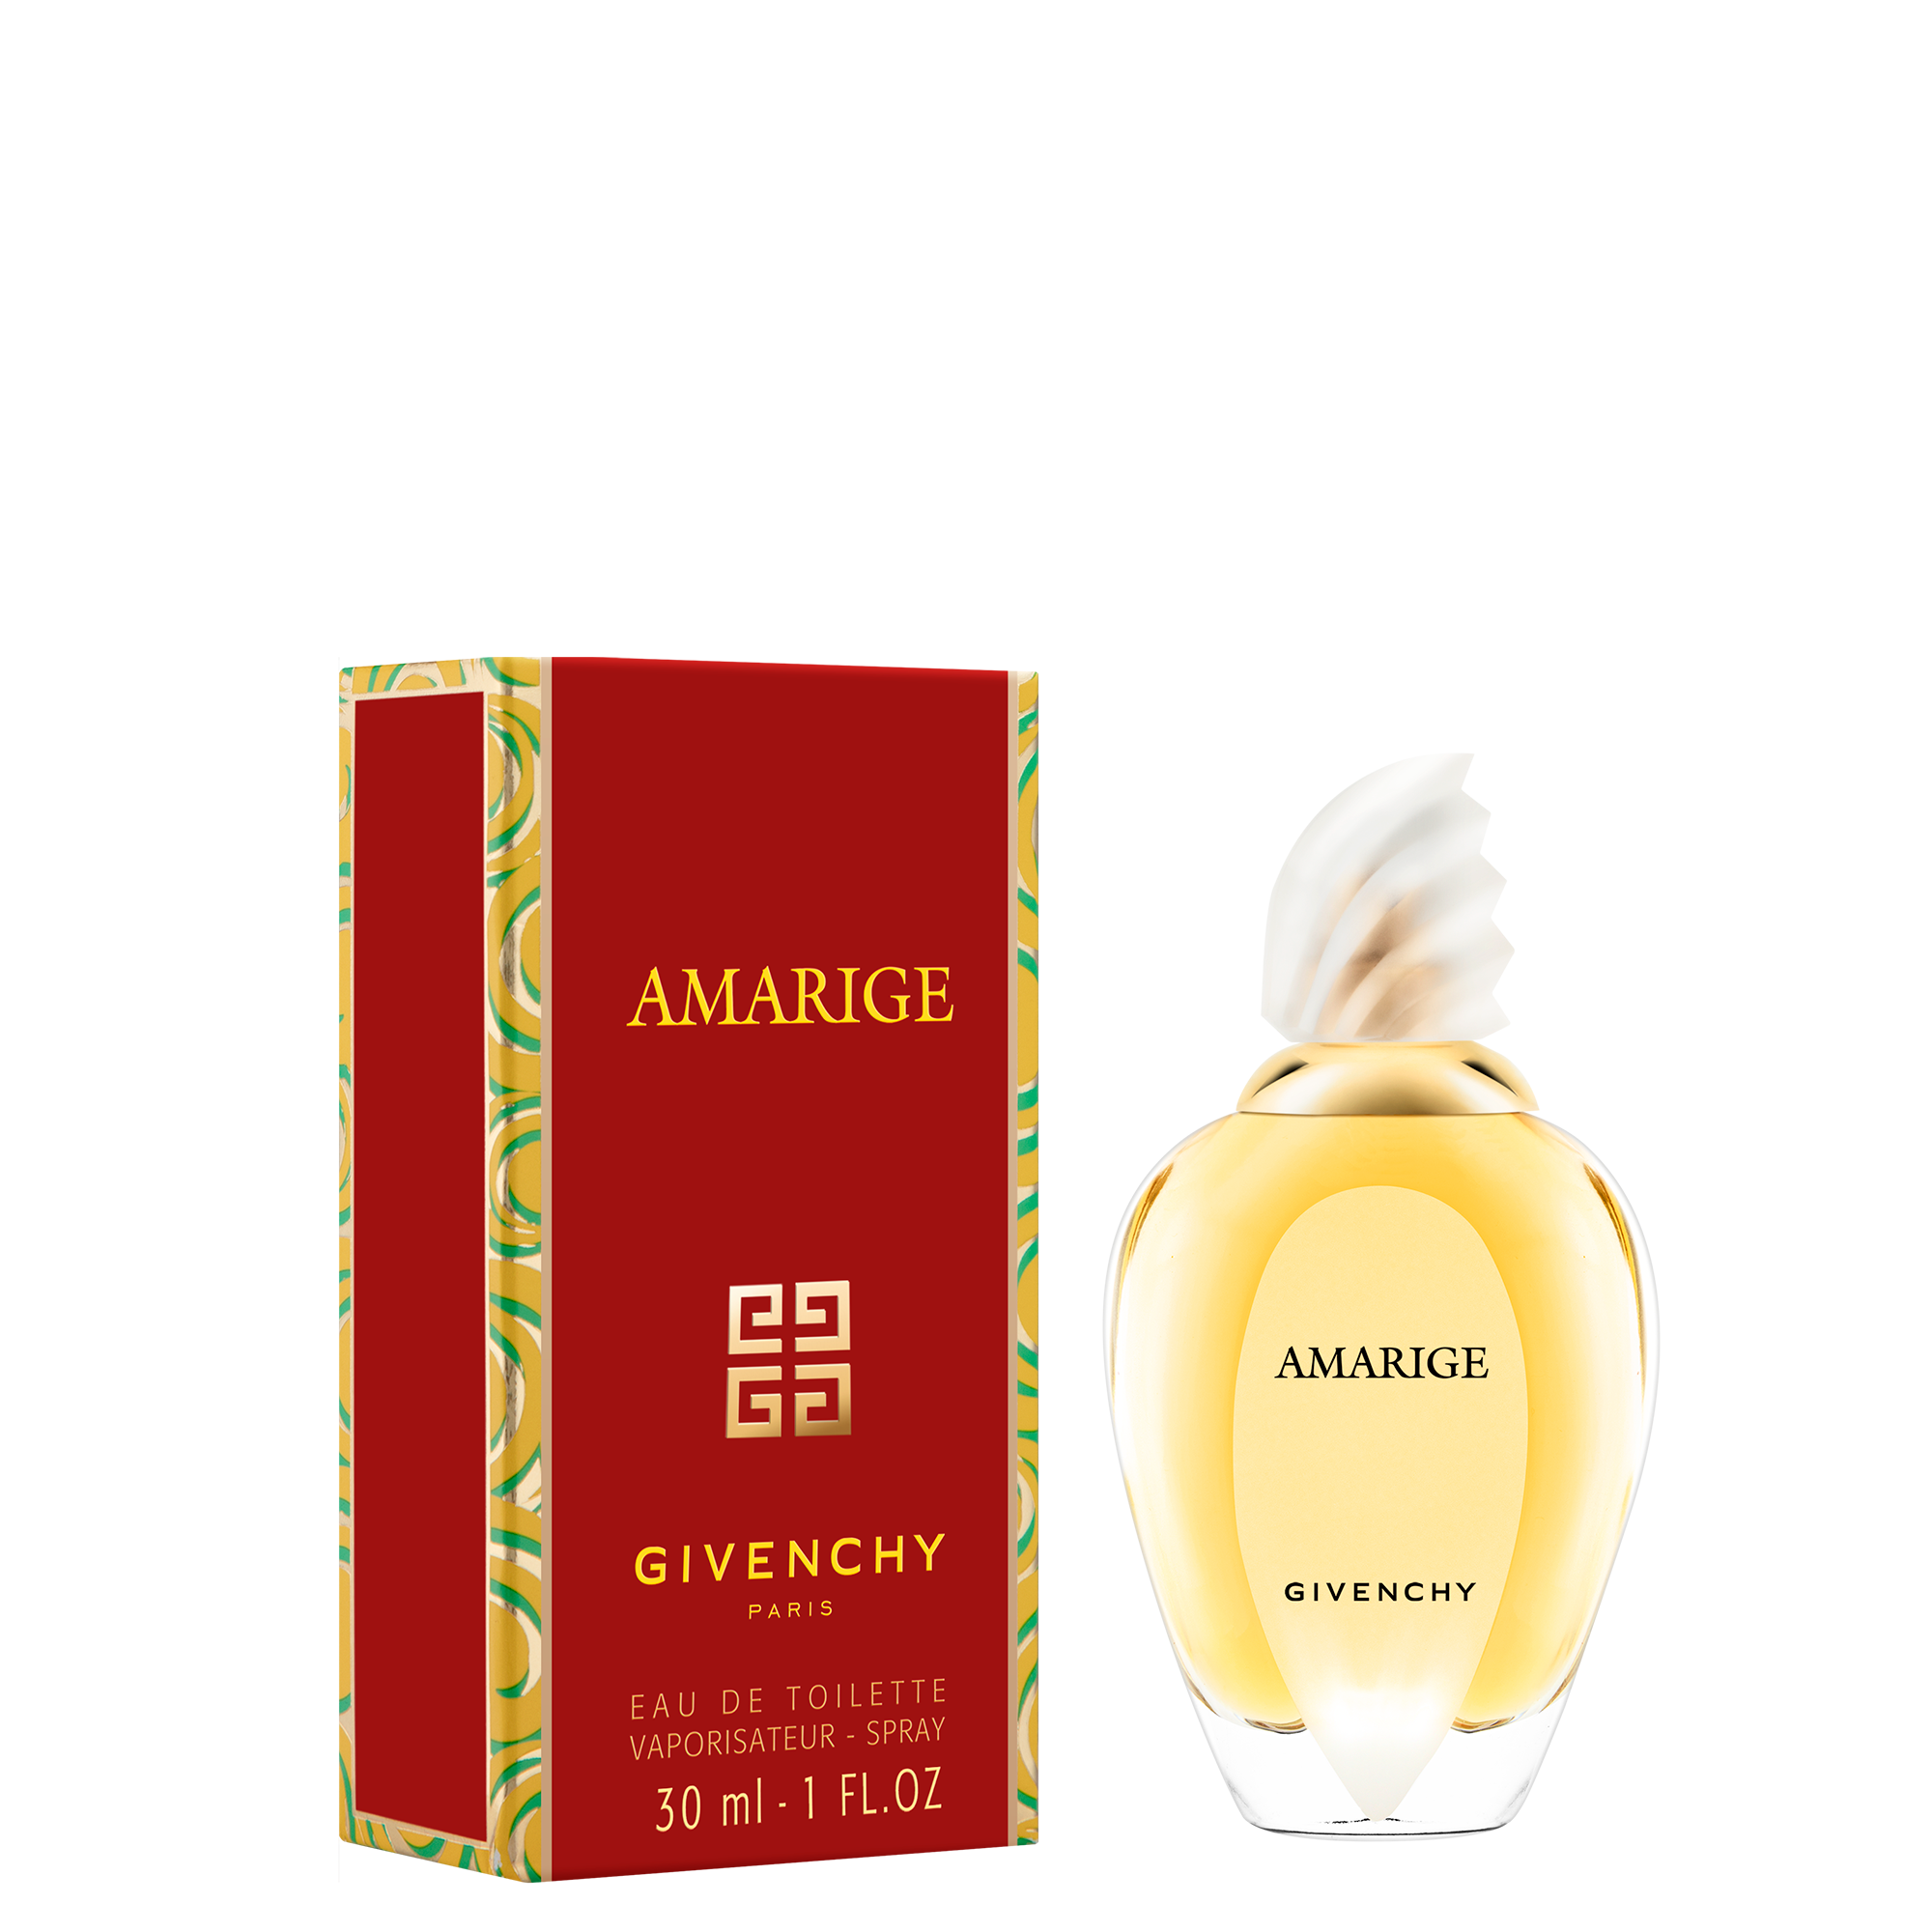 amarige perfume near me